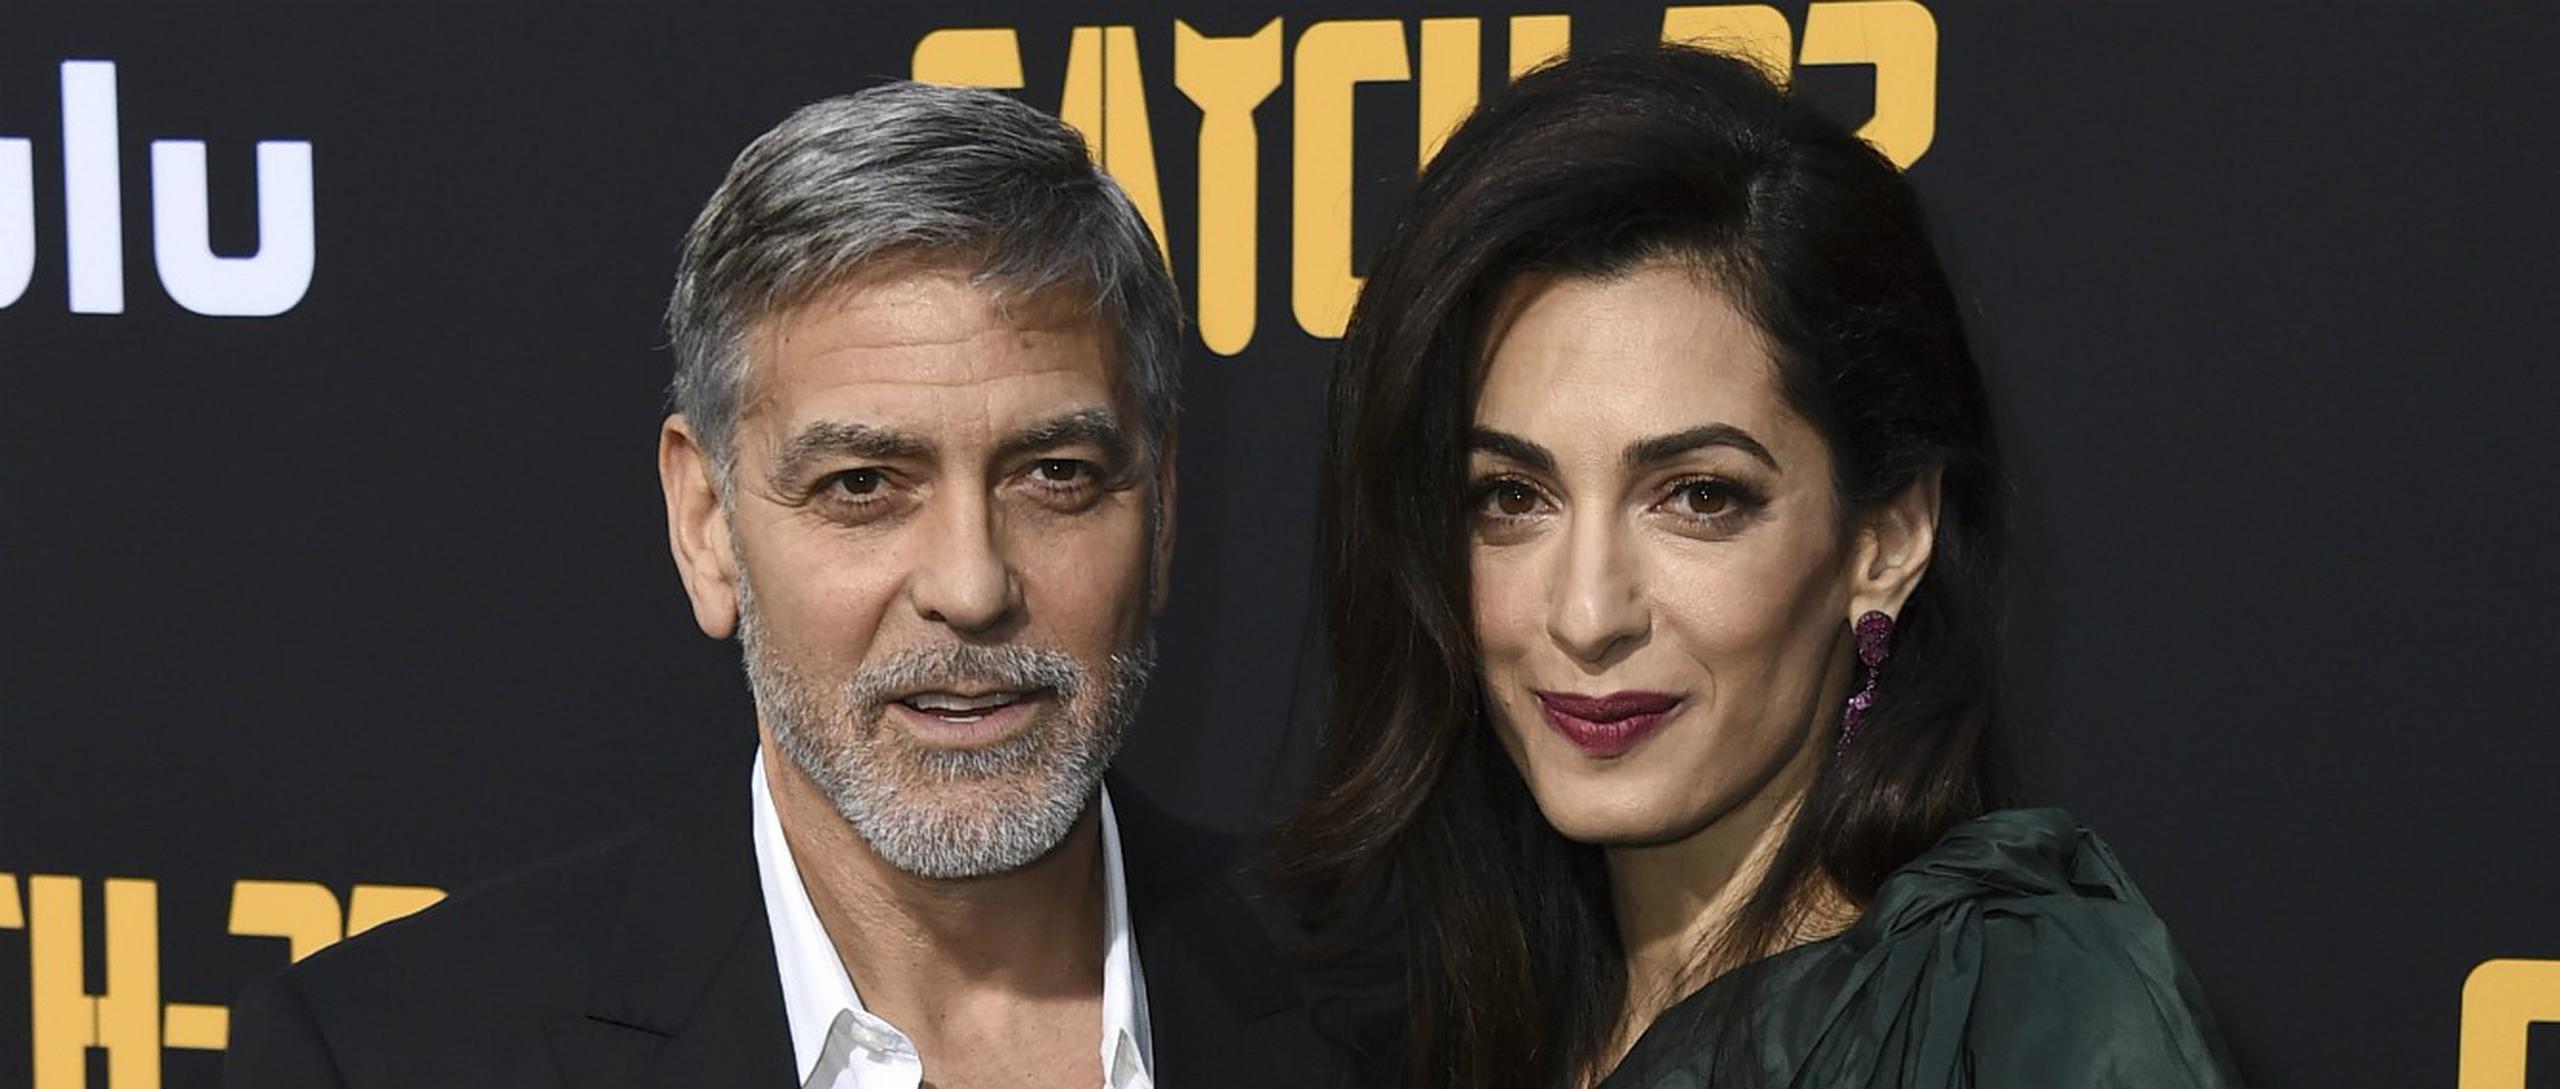 George Clooney entiende que los medios deben respetar el espacio familiar ante la llegada de un nuevo miembro.